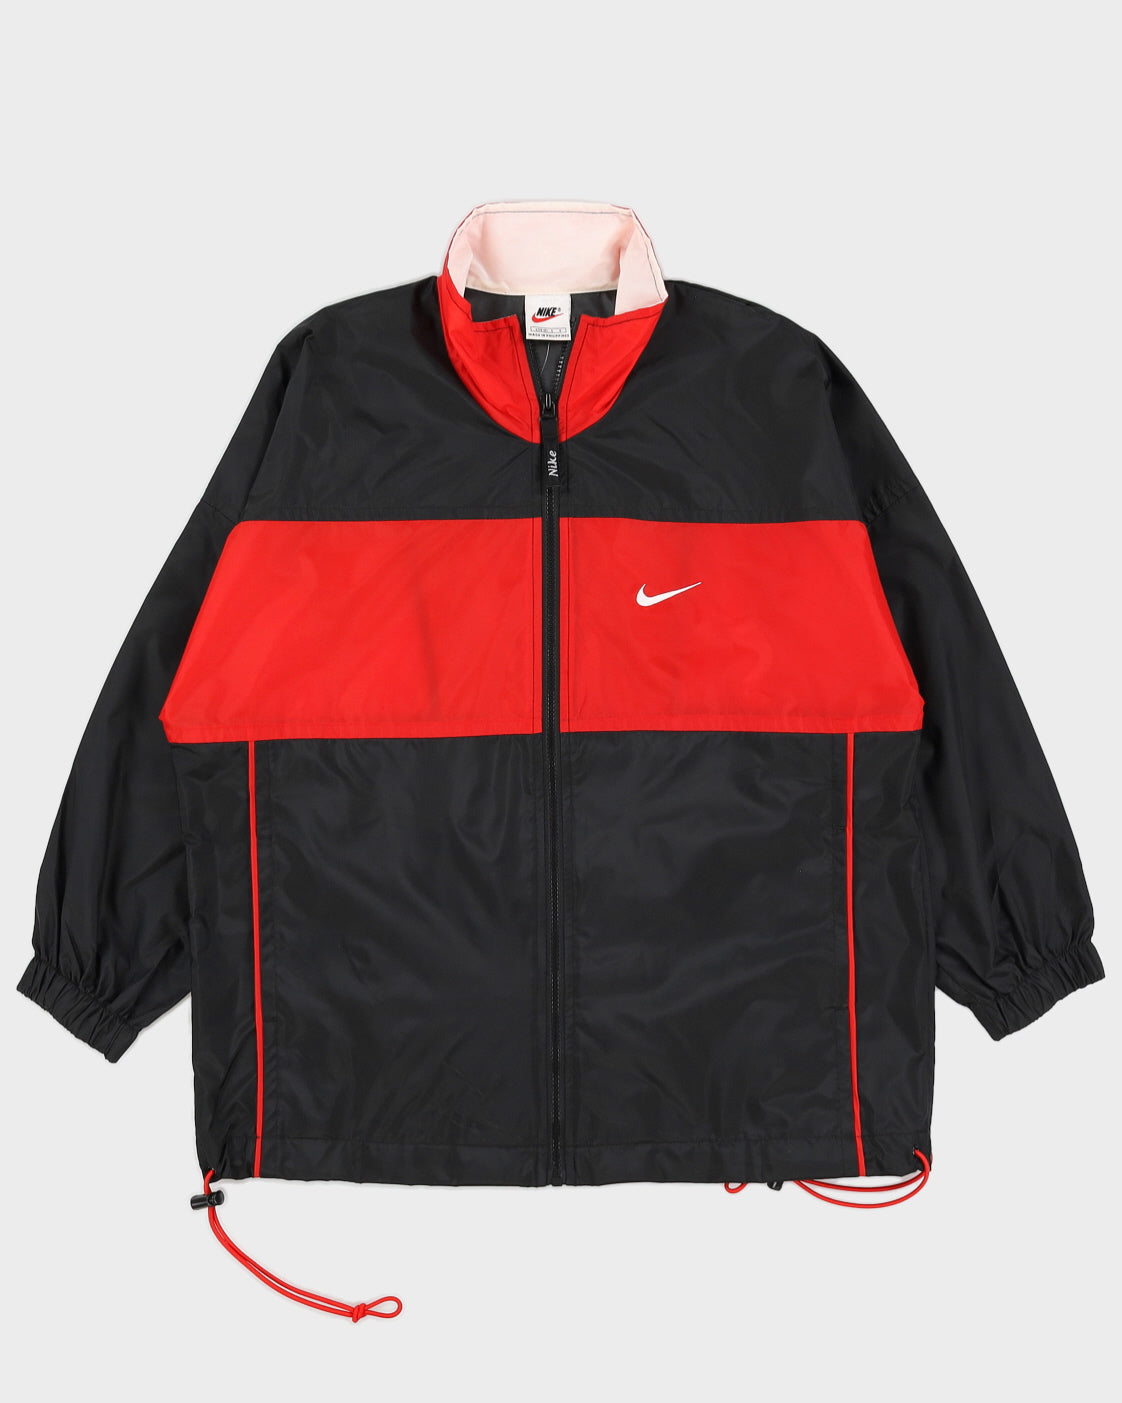 Vintage 90s Nike Black / Red Jacket - M – Rokit